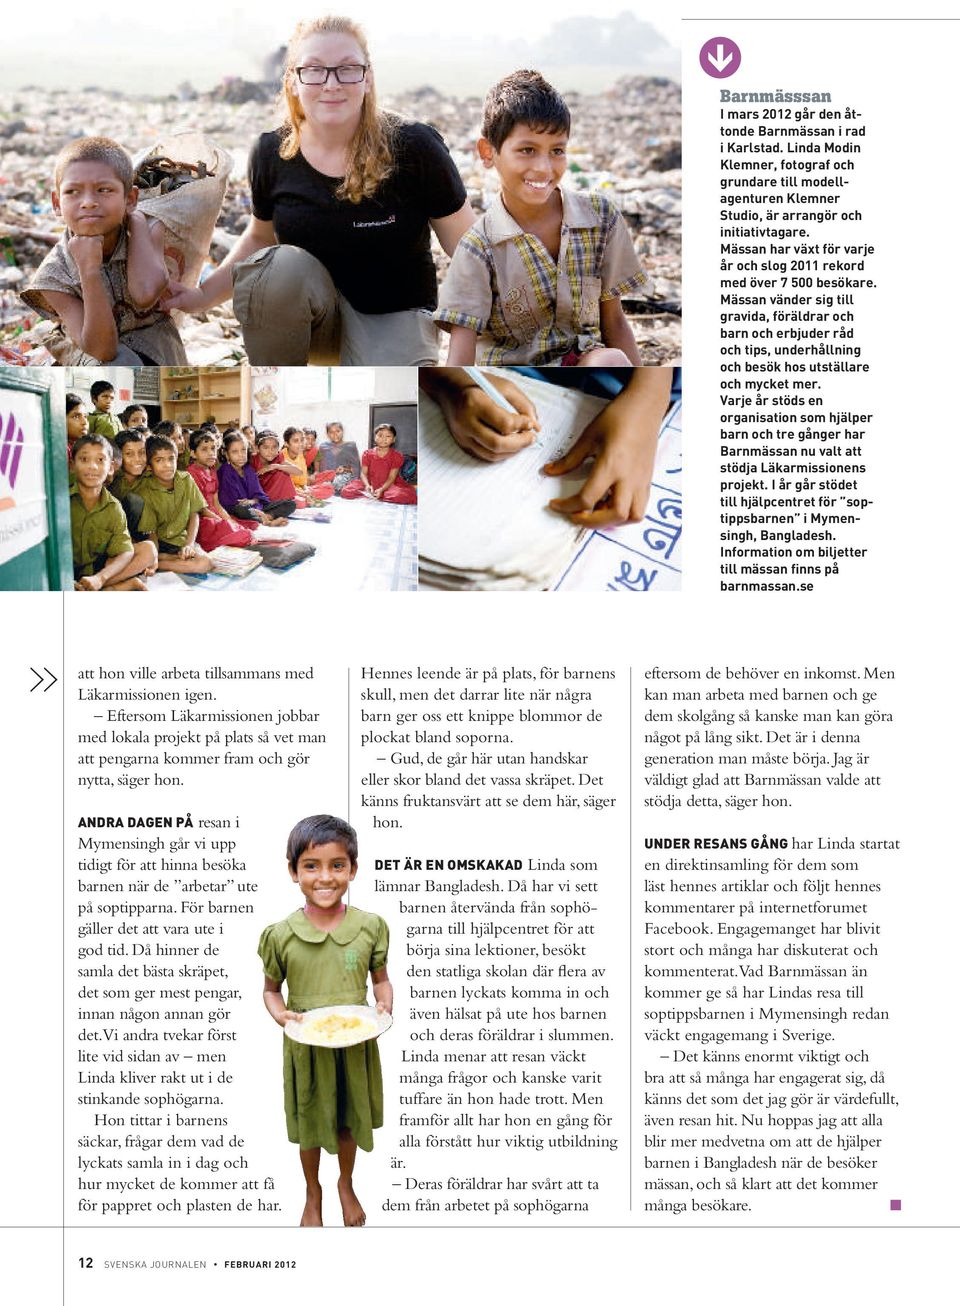 Varje år stöds en organisation som hjäper barn och tre gånger har Barnmässan nu vat att stödja Läkarmissionens projekt. I år går stödet ti hjäpcentret för soptippsbarnen i Mymensingh, Bangadesh.